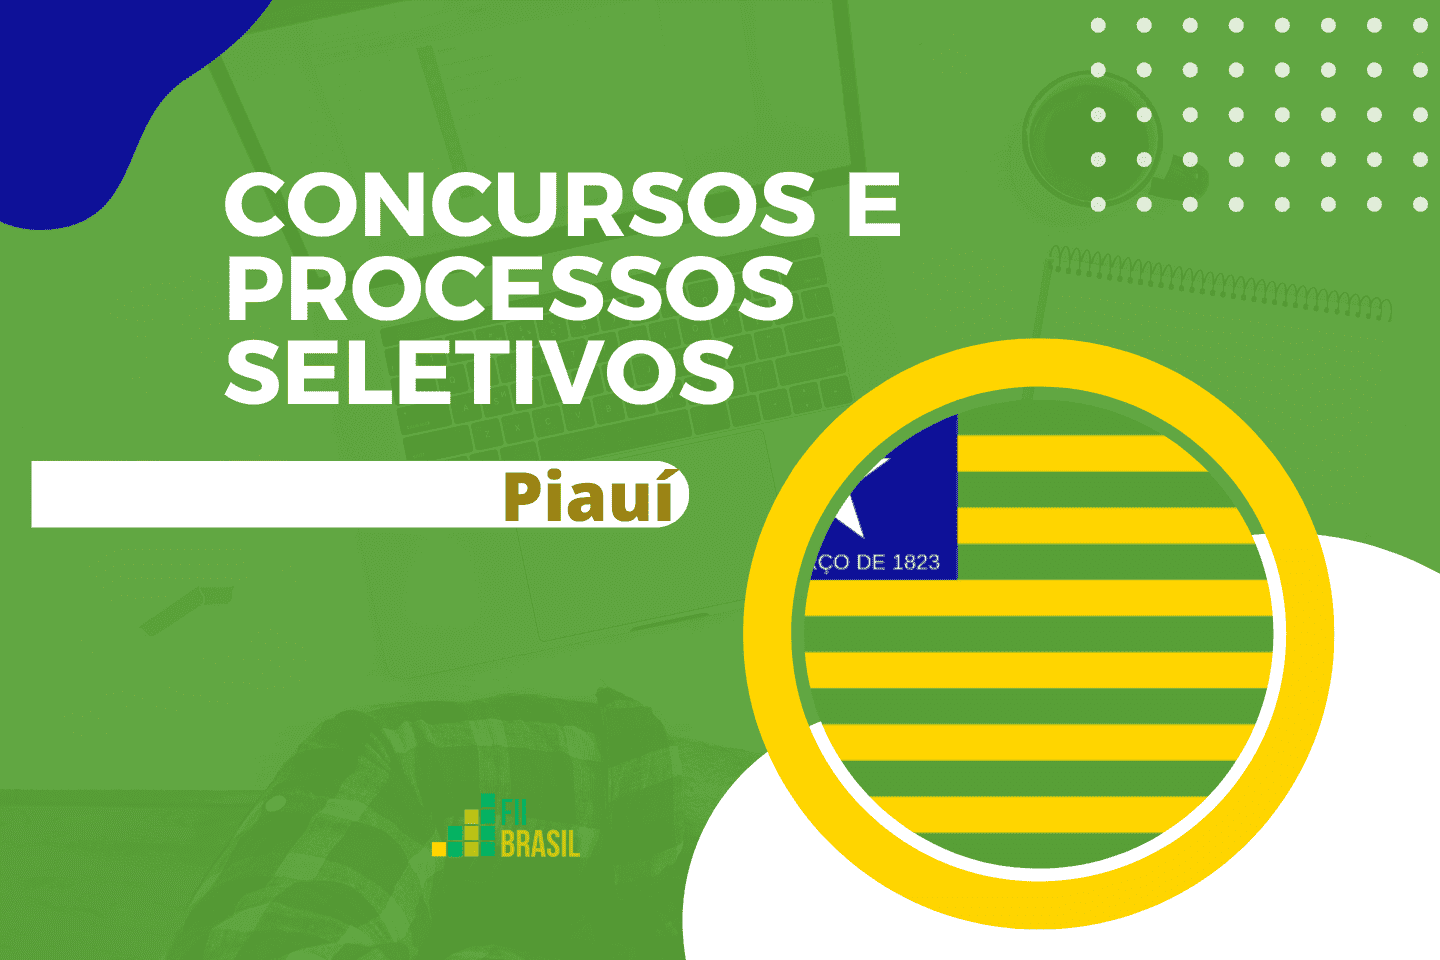 Câmara de União Piauí concurso